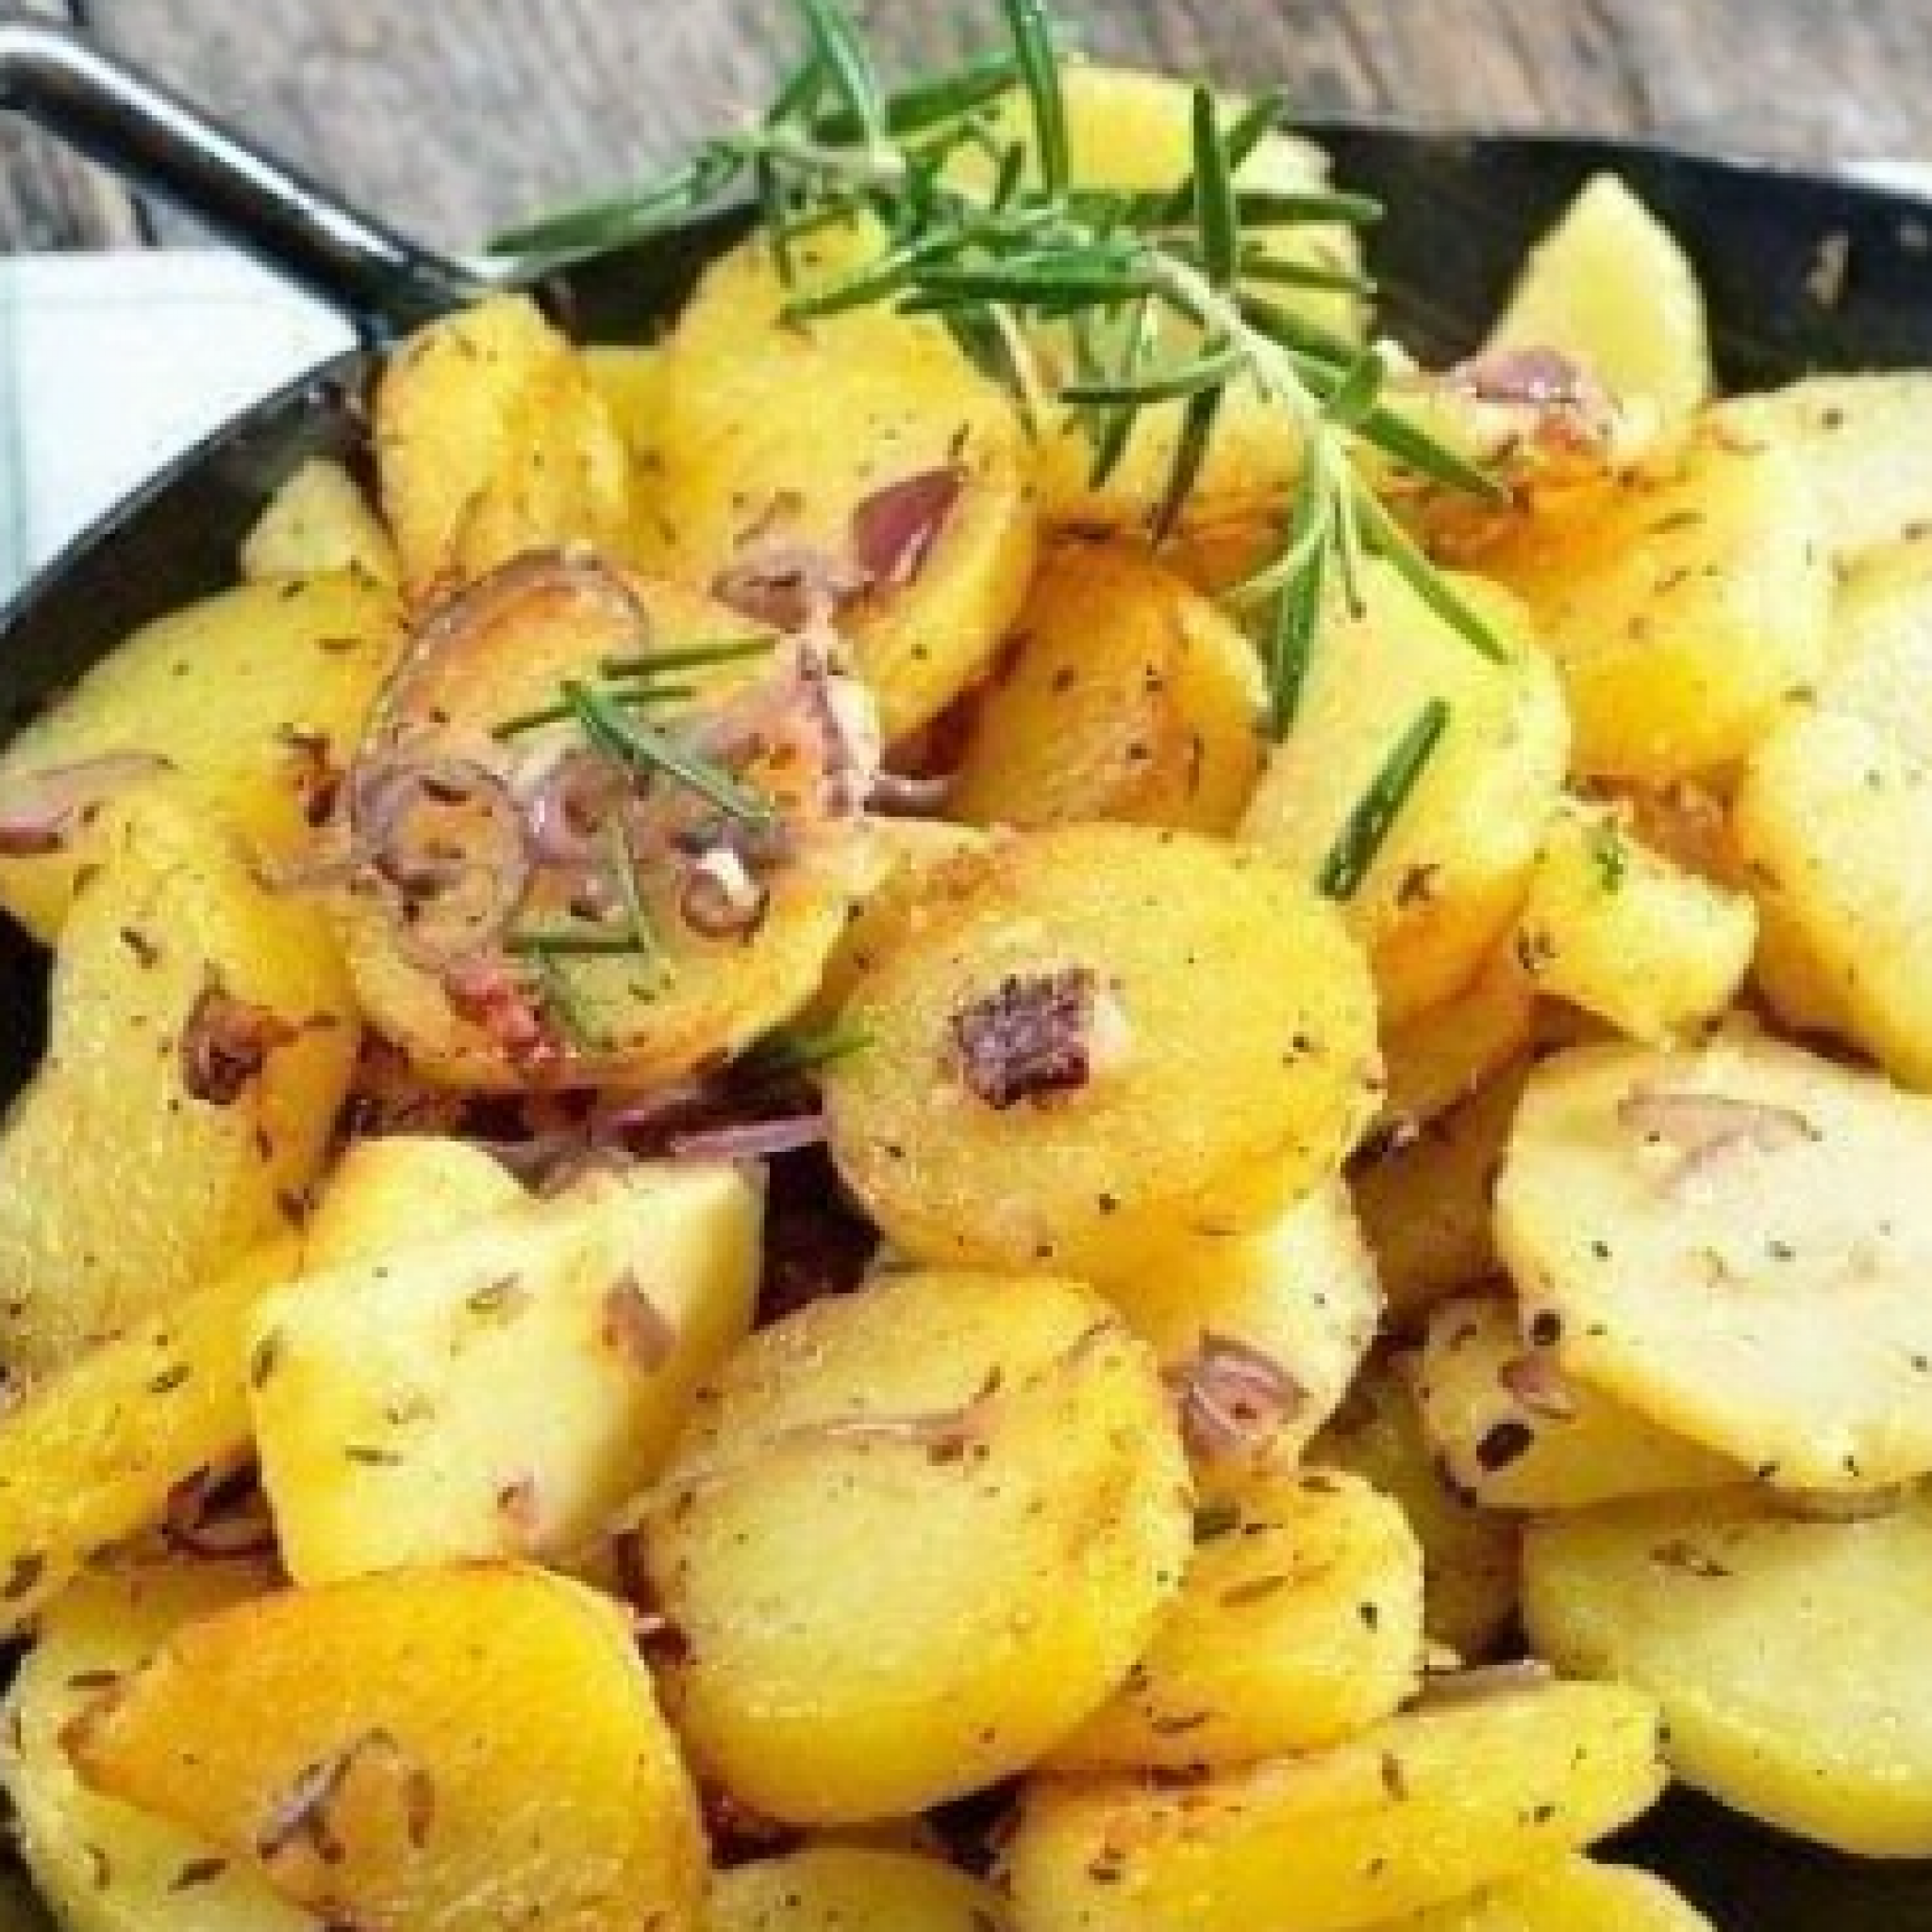 Как пожарить картошку в скороварке витесс